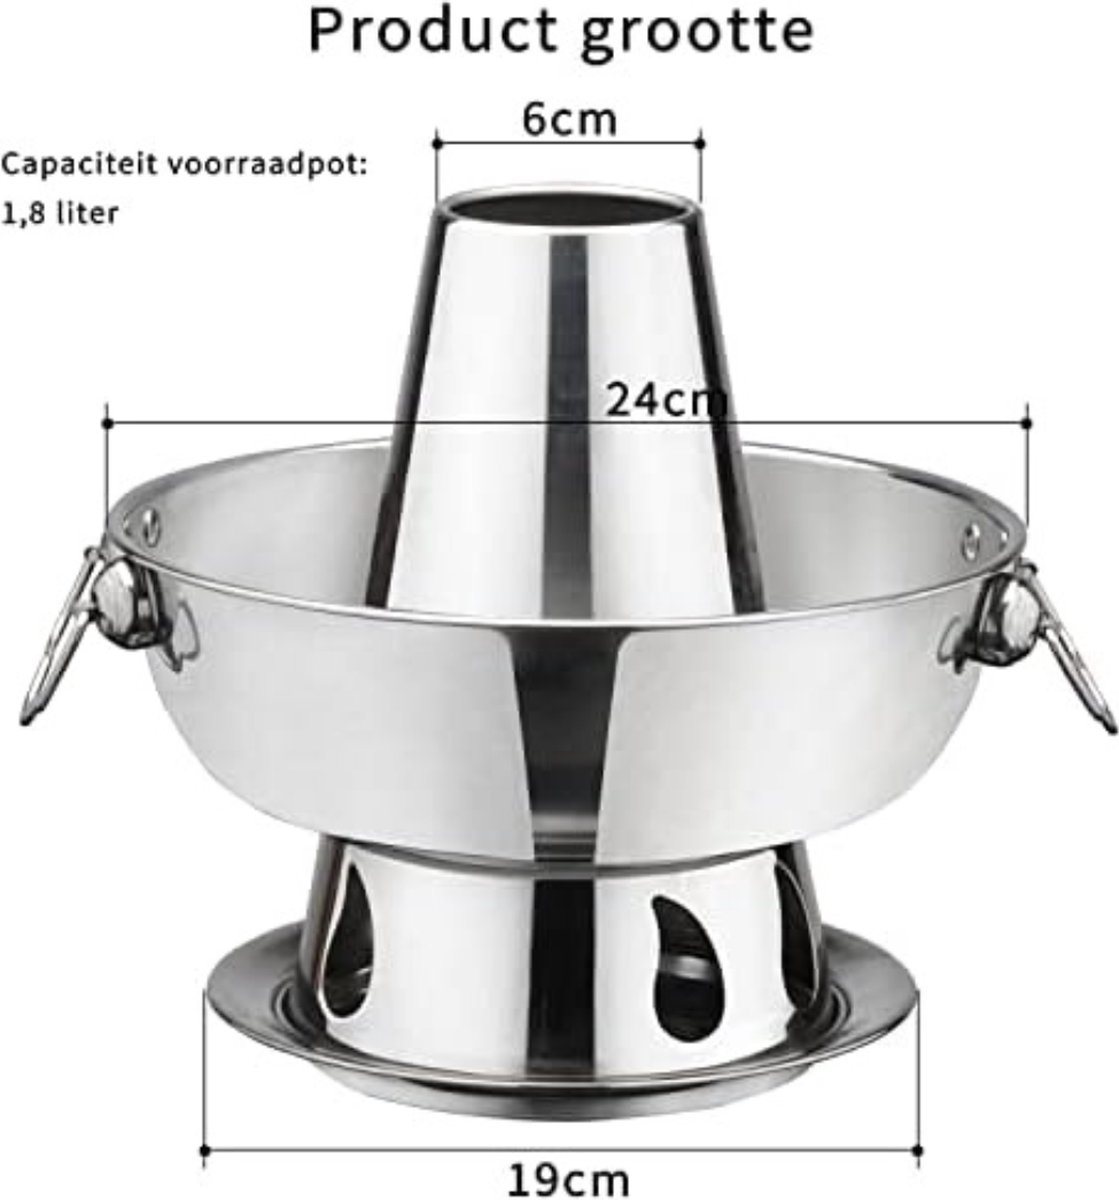 Poêle Hotpot Gratyfied - Hotpot électrique - Fondue chinoise - Marmite  Hotpot